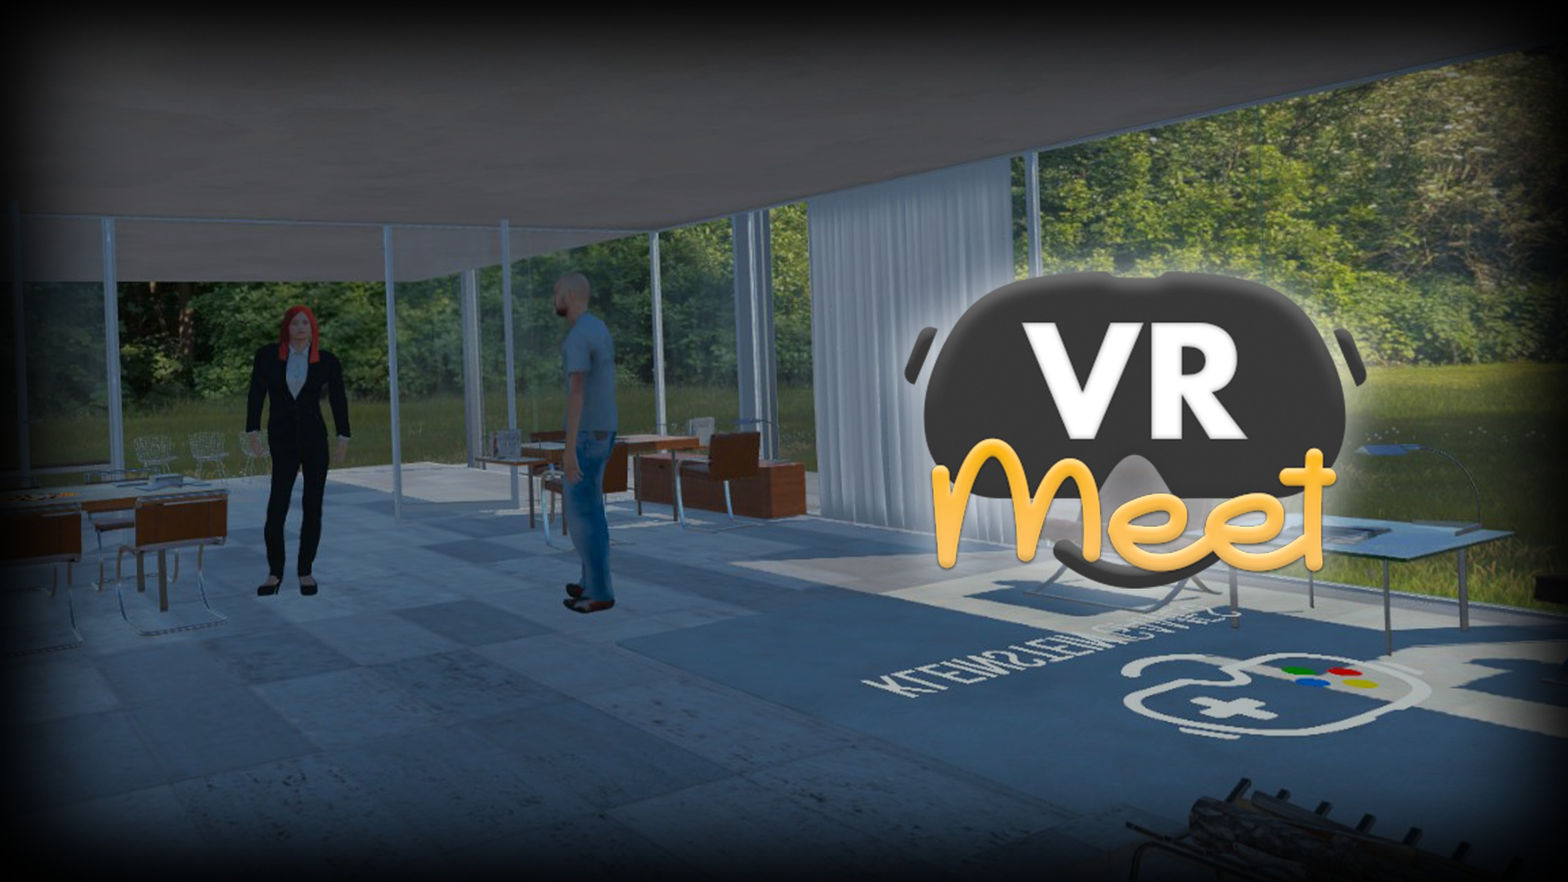 VR Meet